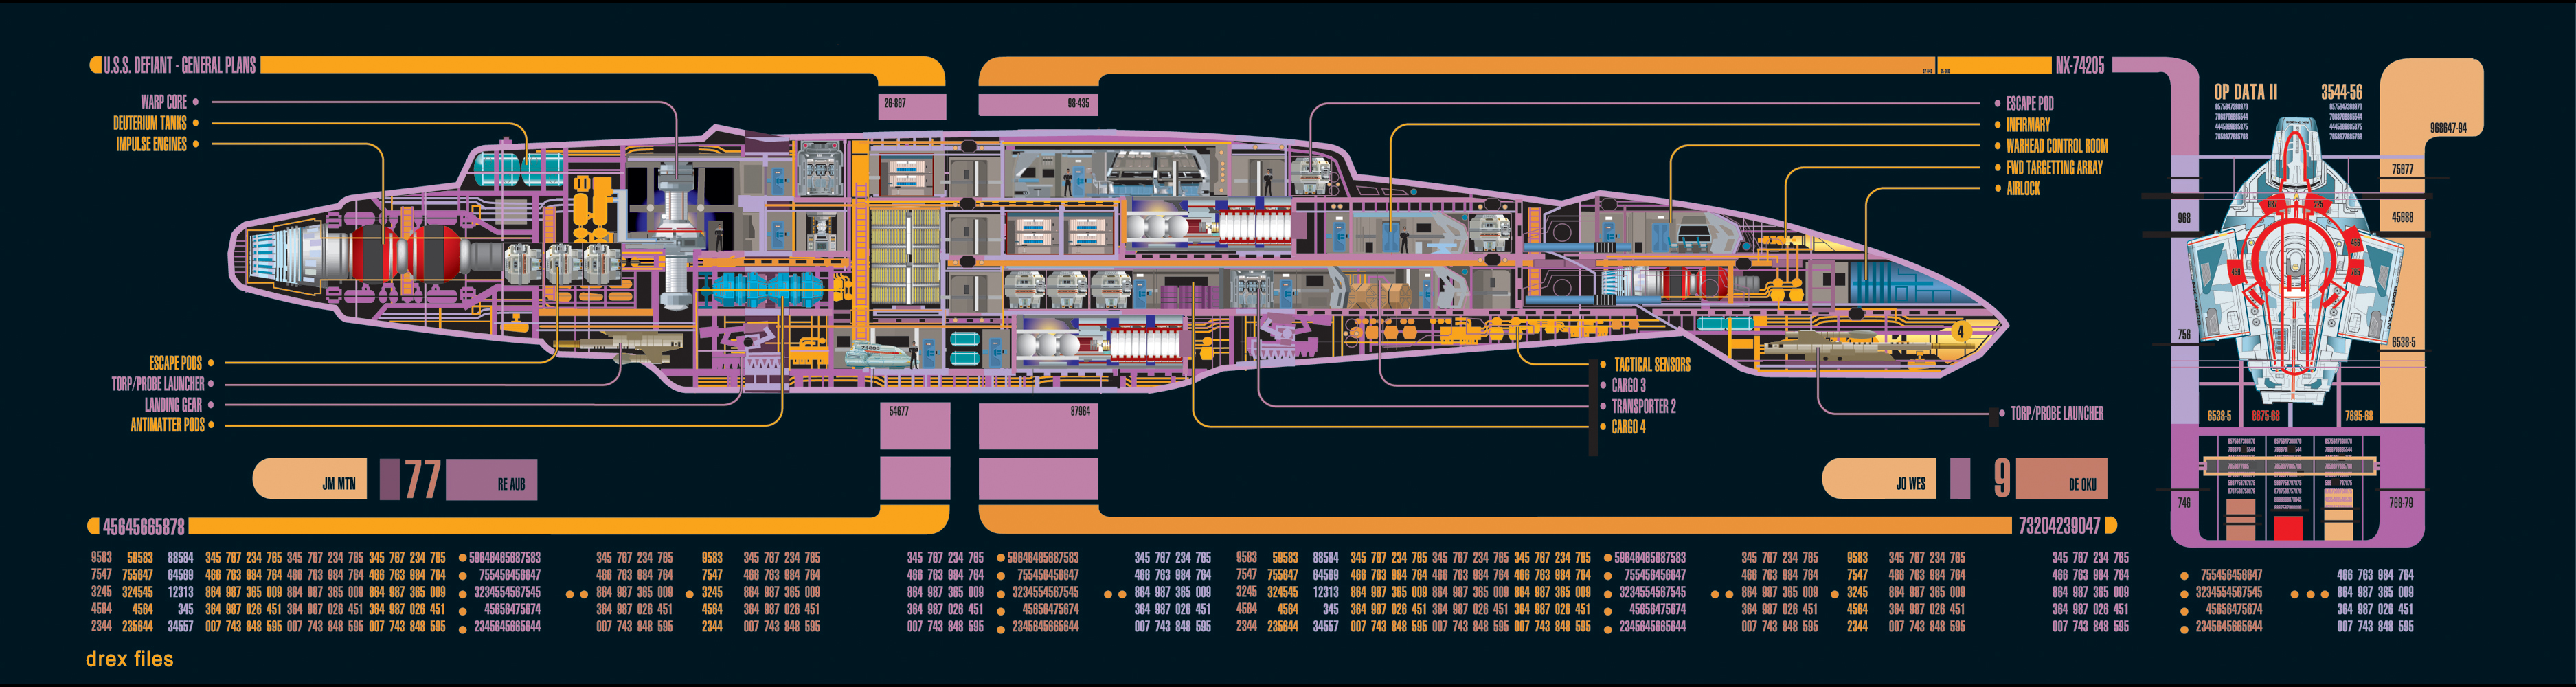 Star Trek Spaceship Star Trek Blueprints Blueprints 3750x1000